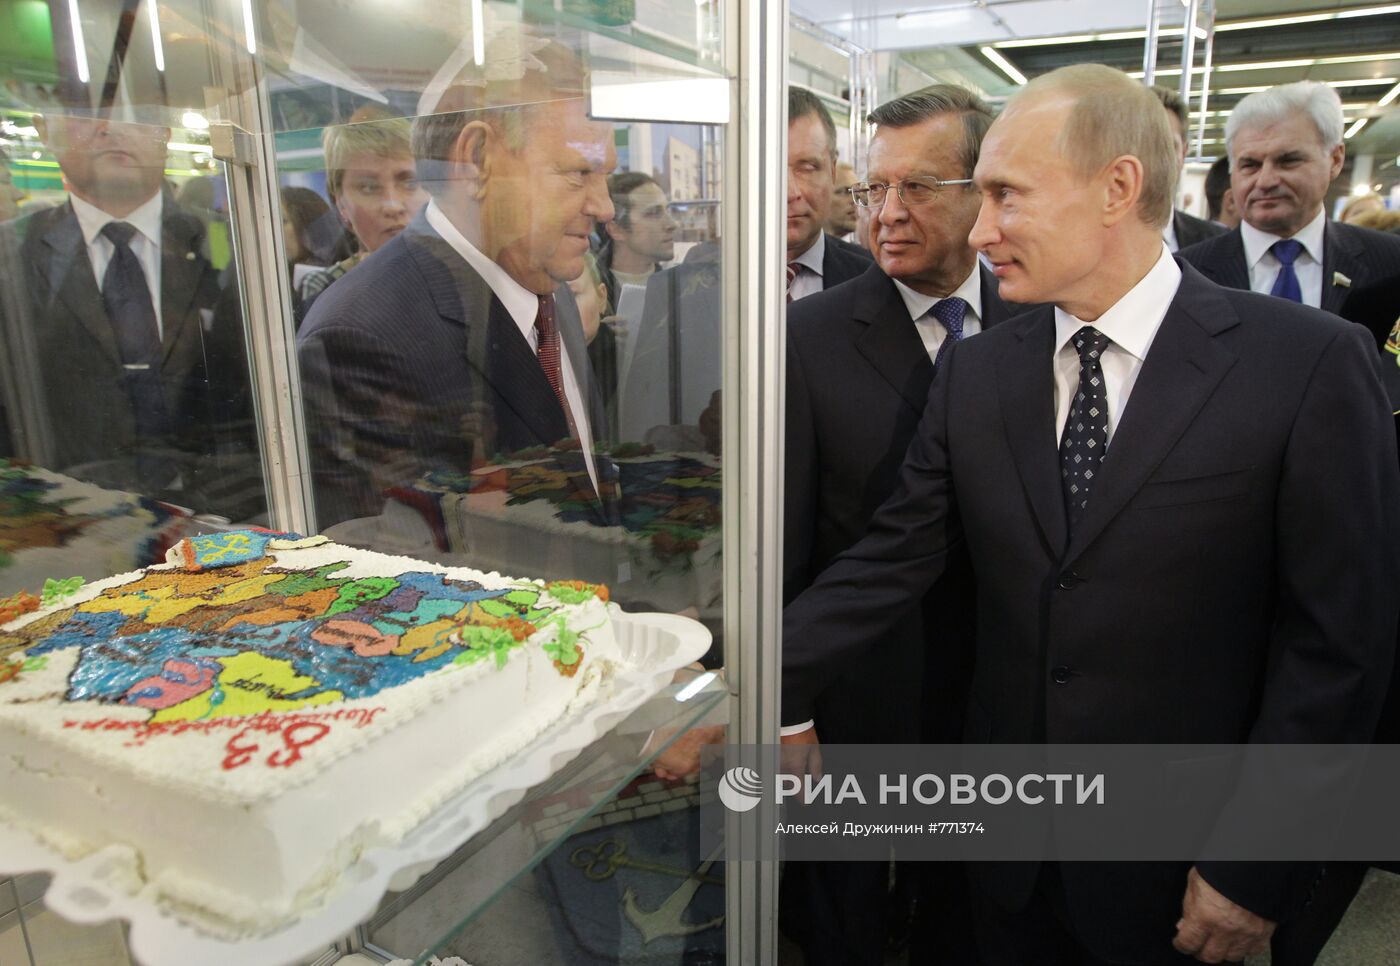 Владимир Путин посетил выставку "Золотая осень"